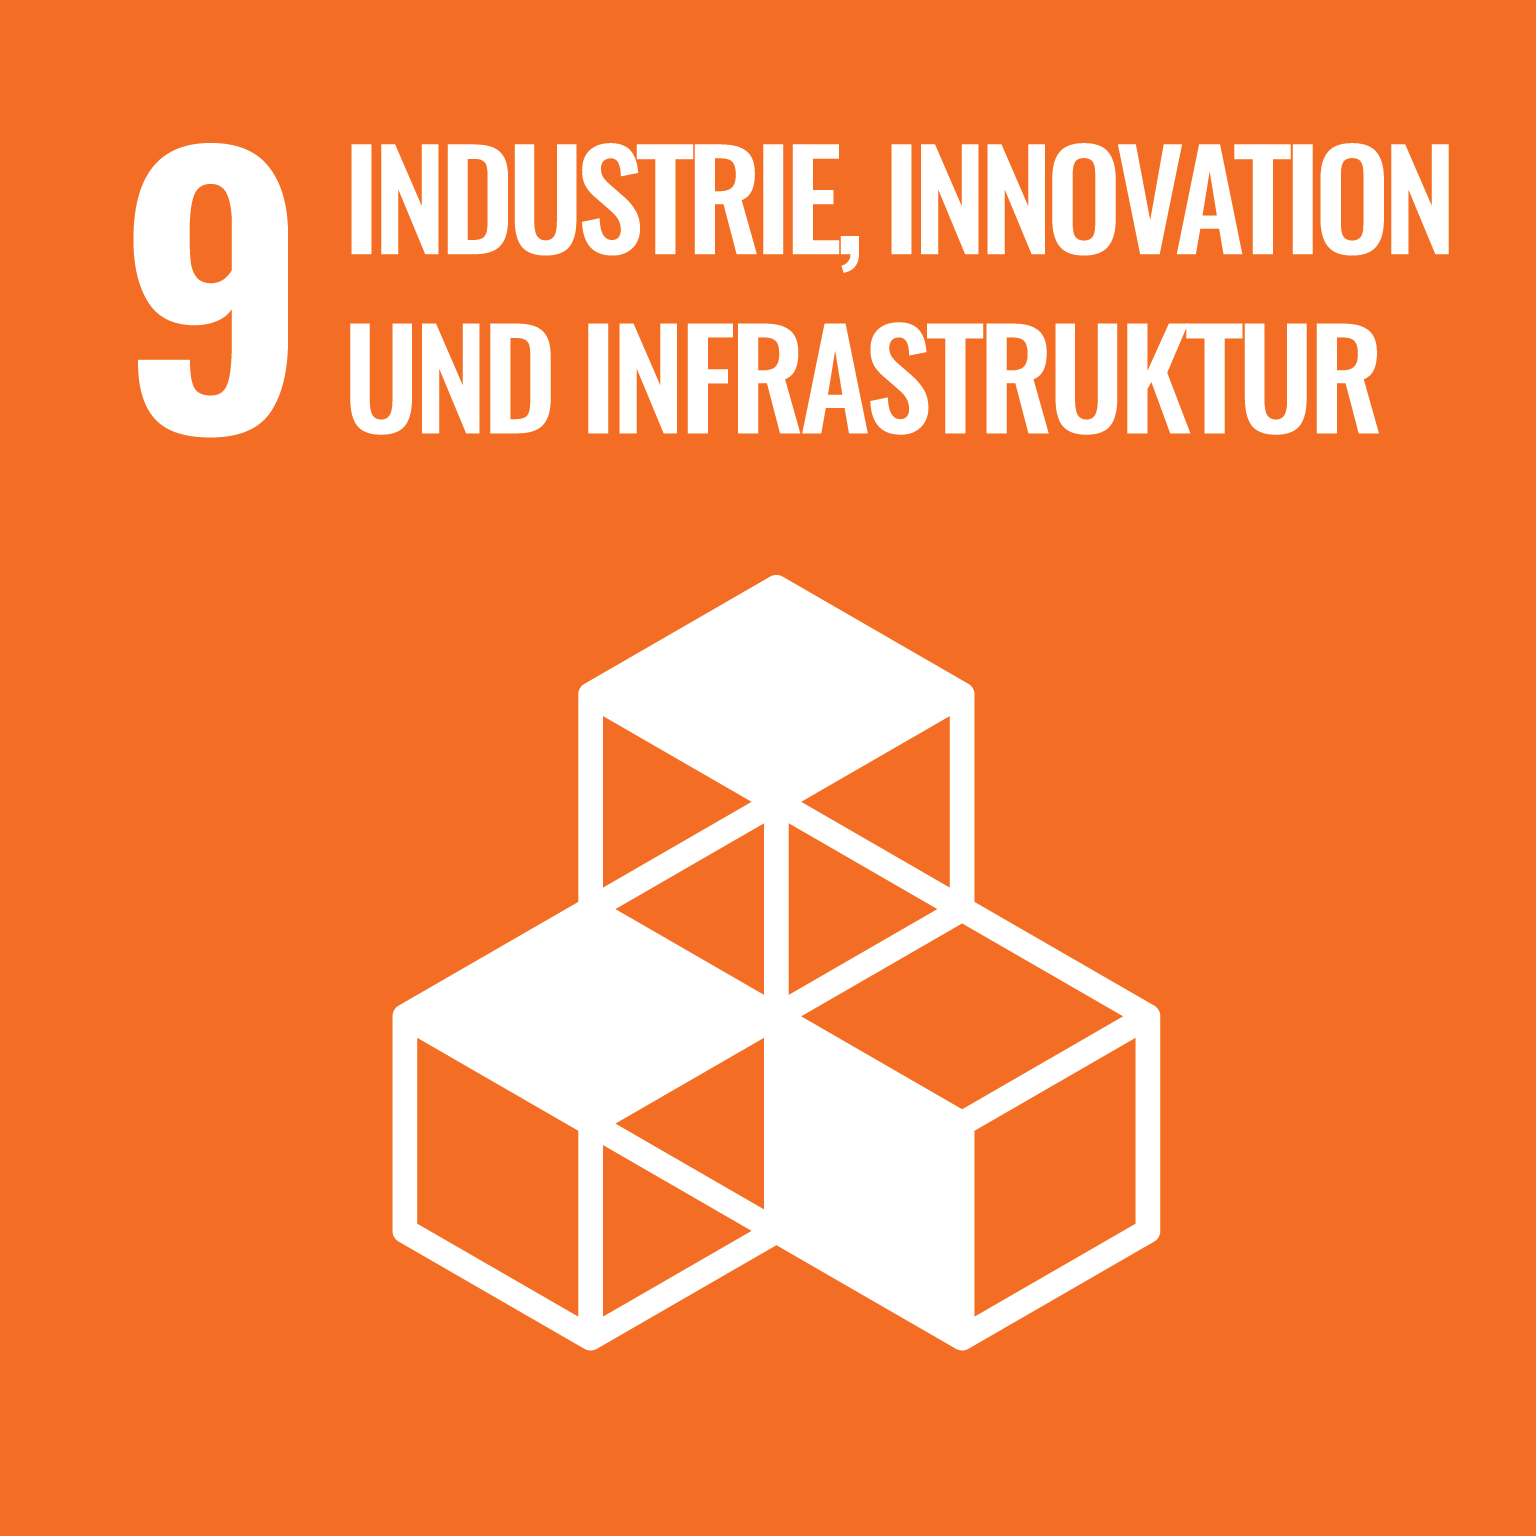 9 Industrie, Innovation und Infrastruktur